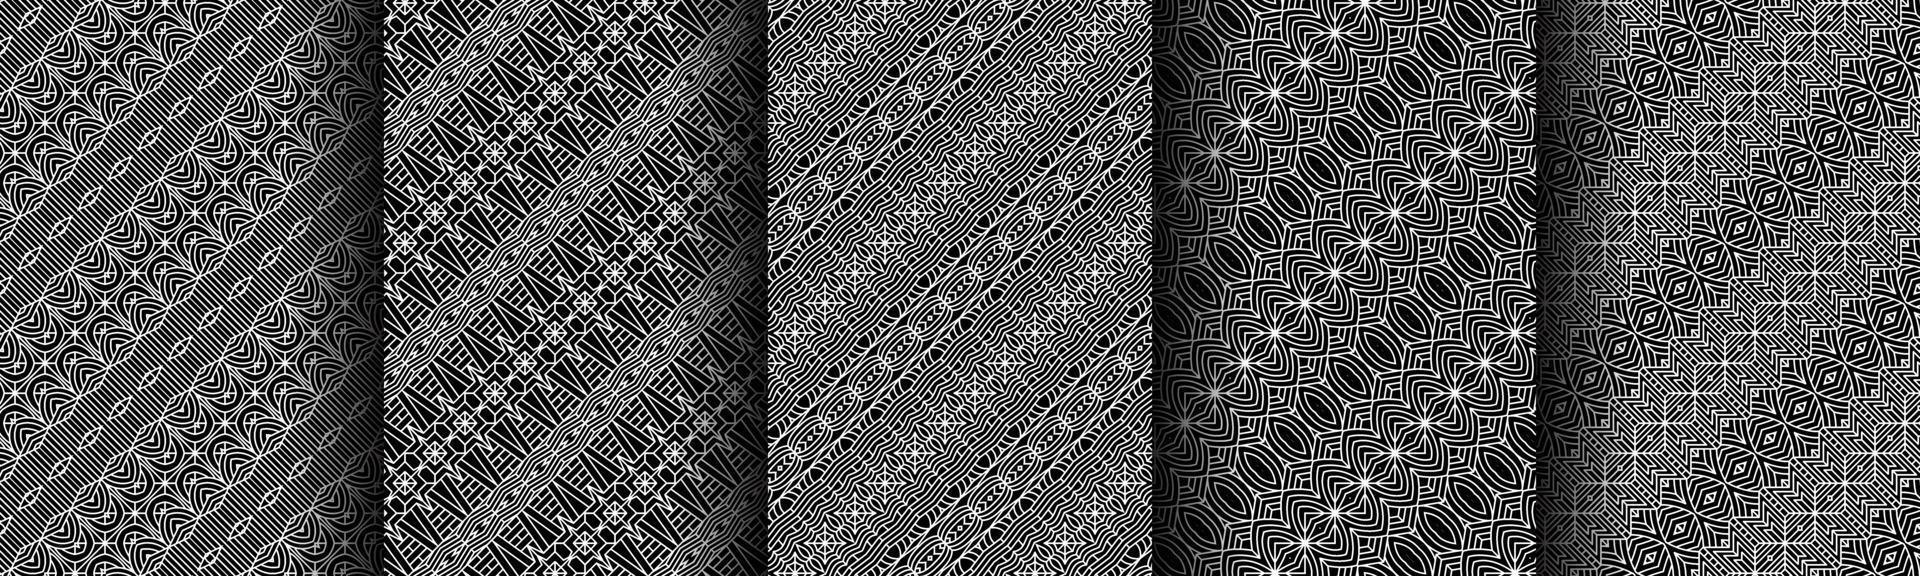 paquete de colección de patrones geométricos en blanco y negro moderno vector